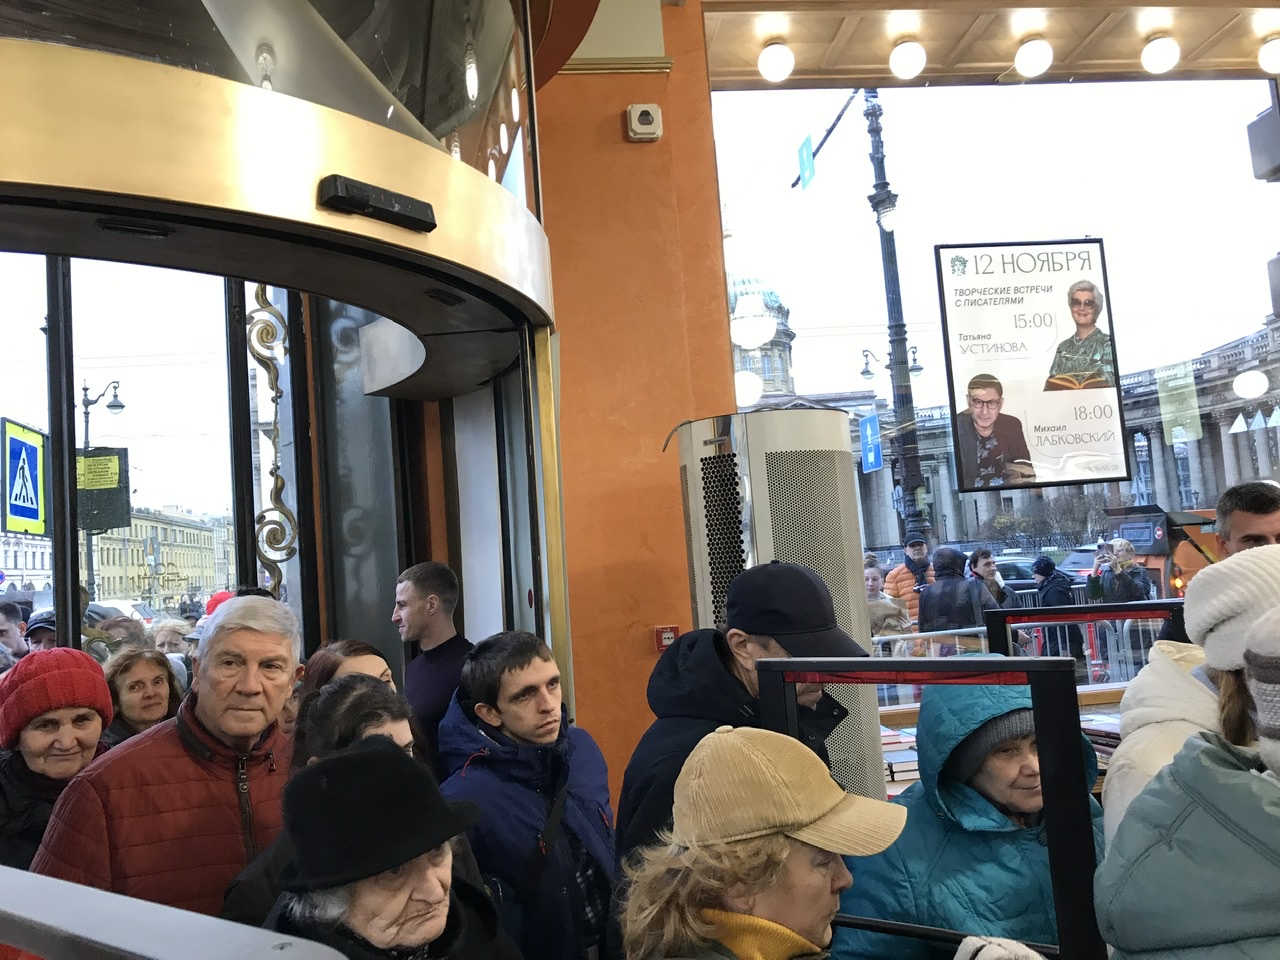 Открытие Дома Книги в Петербурге: первые посетители книжного магазина после реставрации.